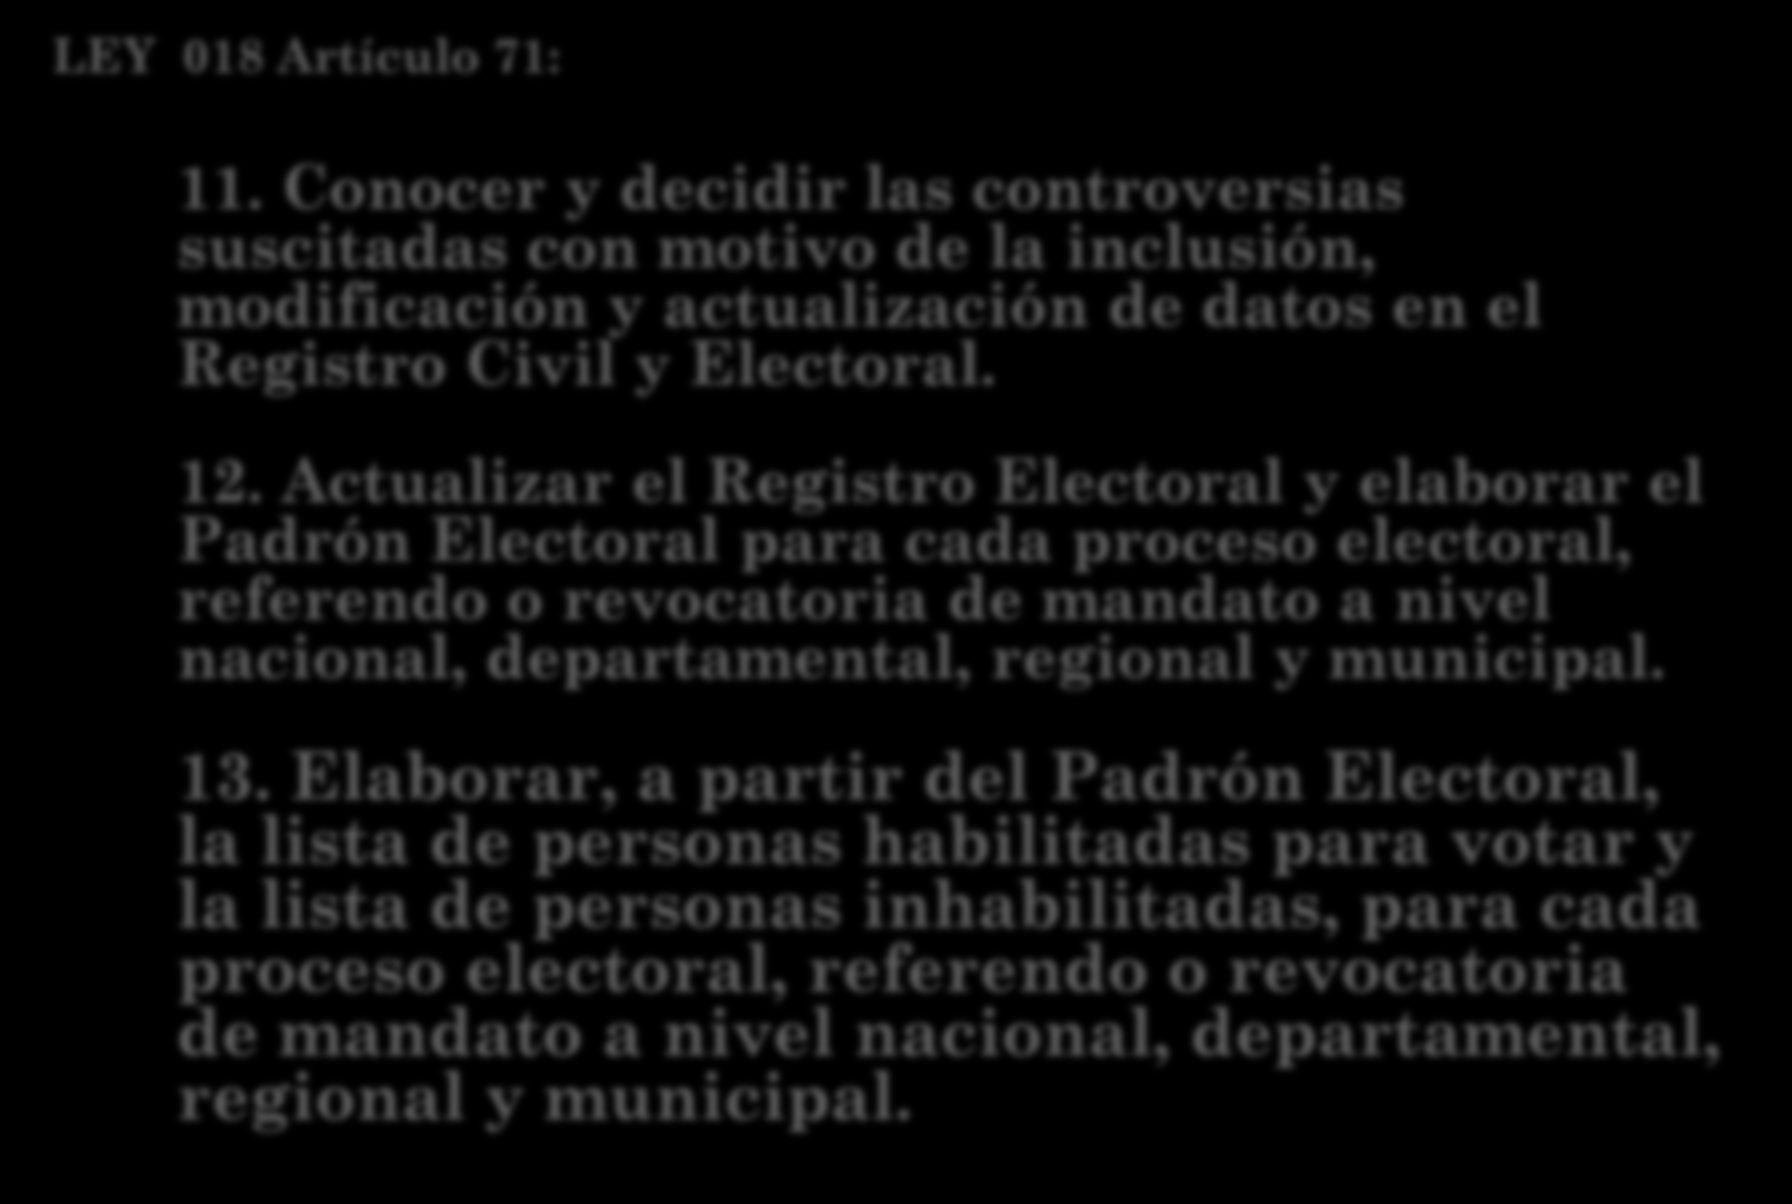 LEY 018 Artículo 71: 11. Conocer y decidir las controversias suscitadas con motivo de la inclusión, modificación y actualización de datos en el Registro Civil y Electoral. 12.